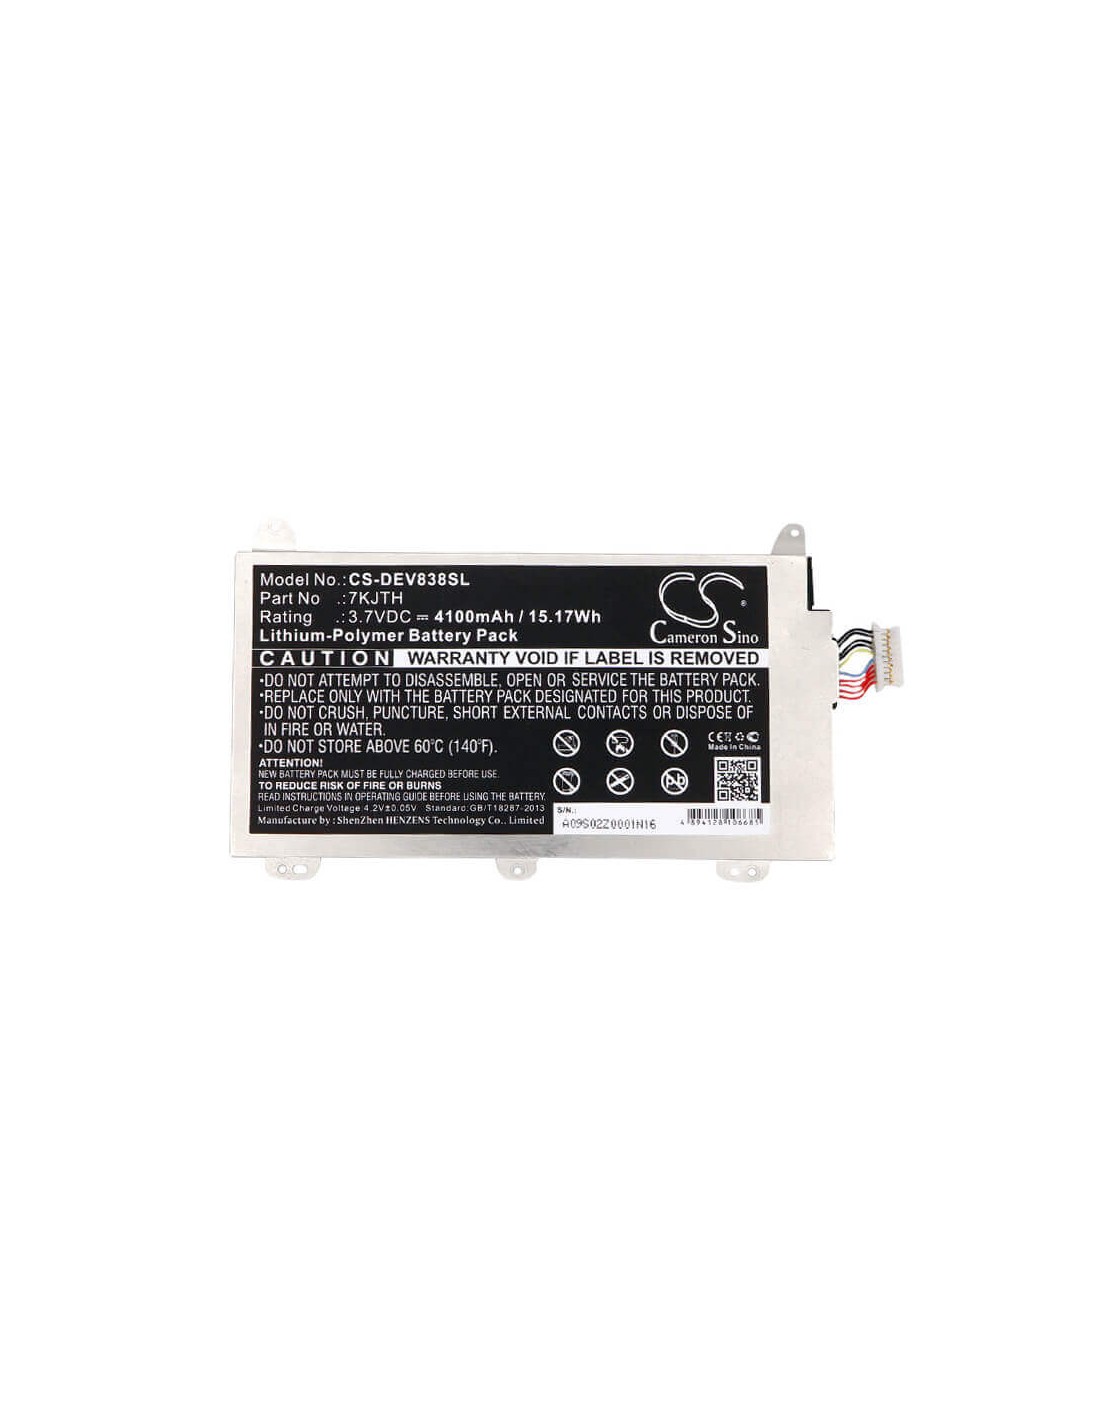 Battery for Dell Venue 8 Pro 3845 3.7V, 4300mAh - 15.91Wh